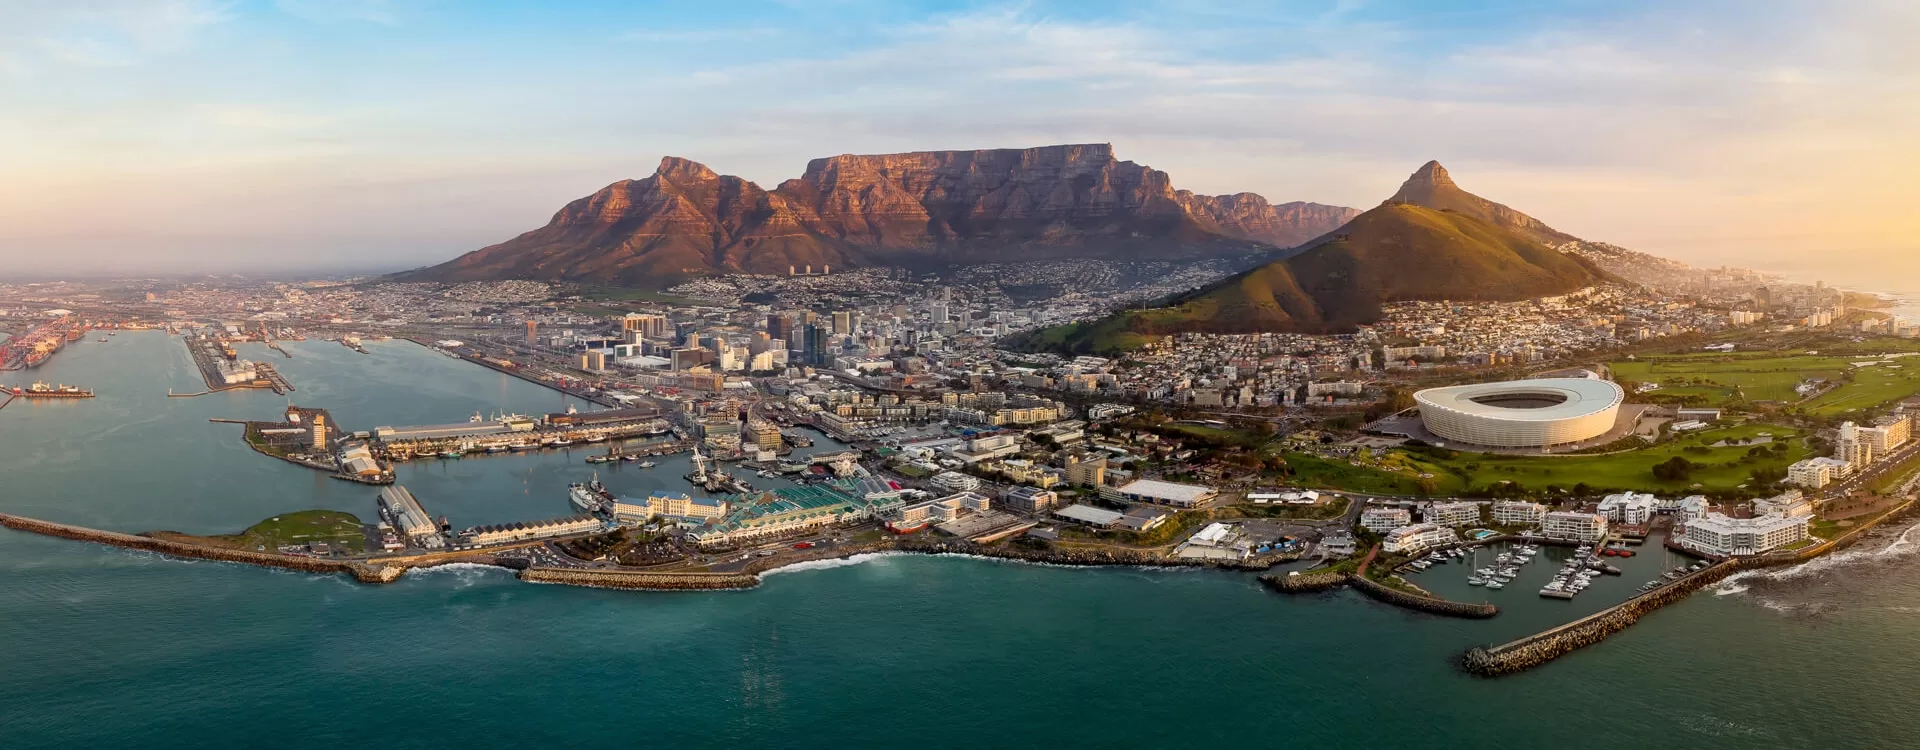 Cape Town Exclusive Destinations